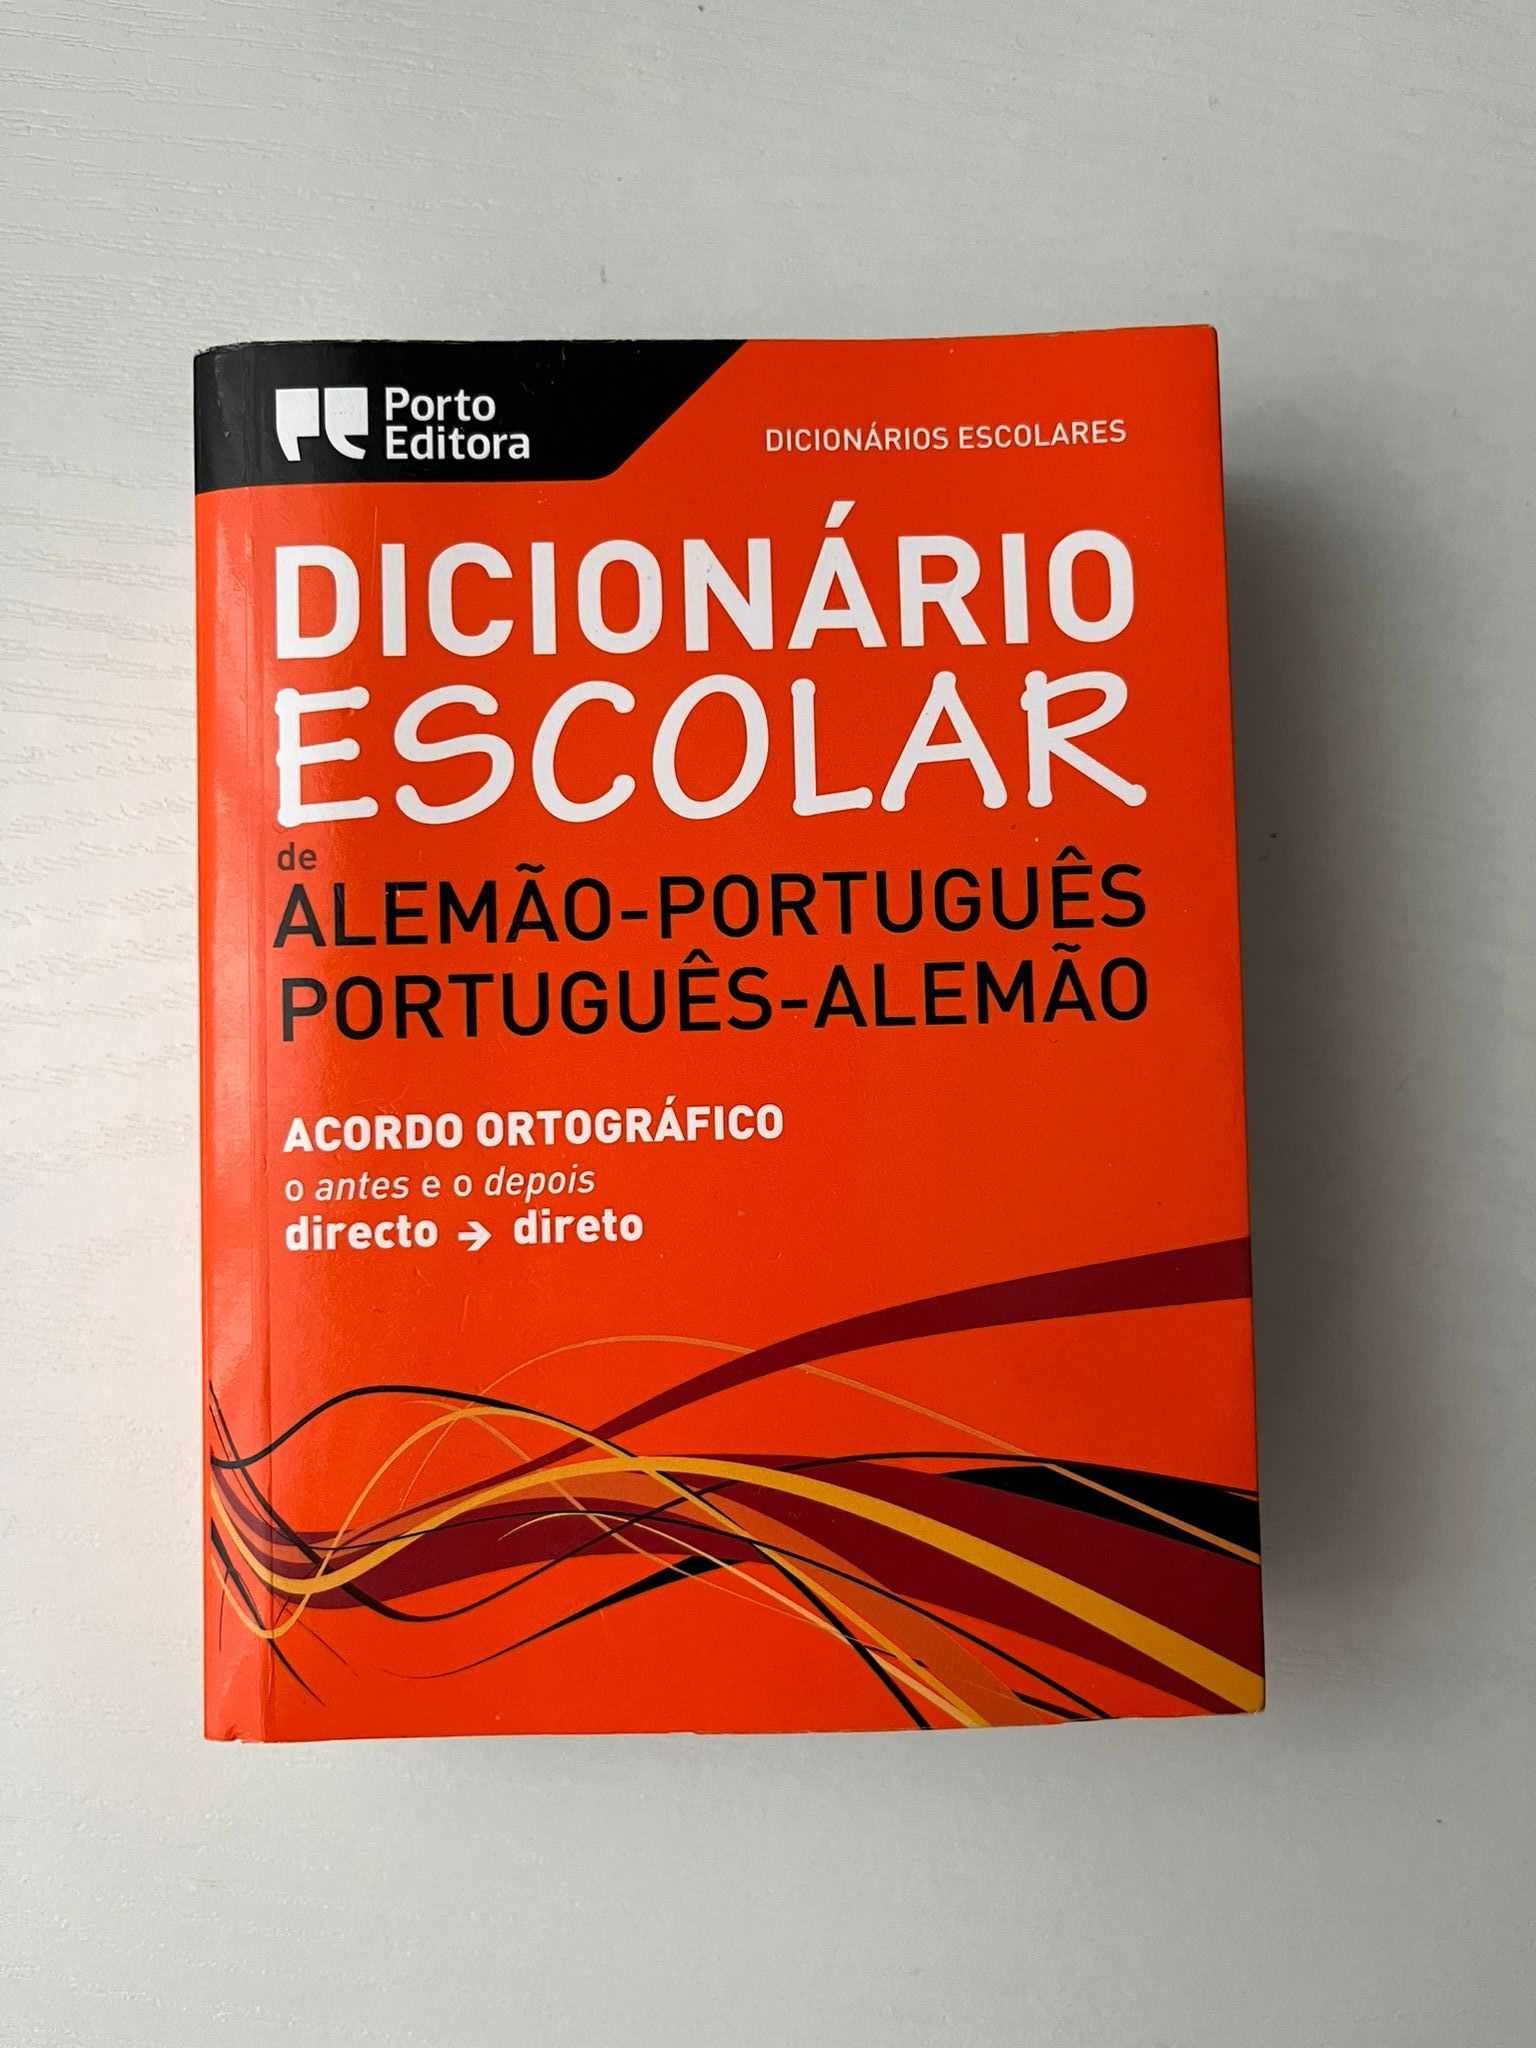 Dicionário Português-Alemão da Porto Editora